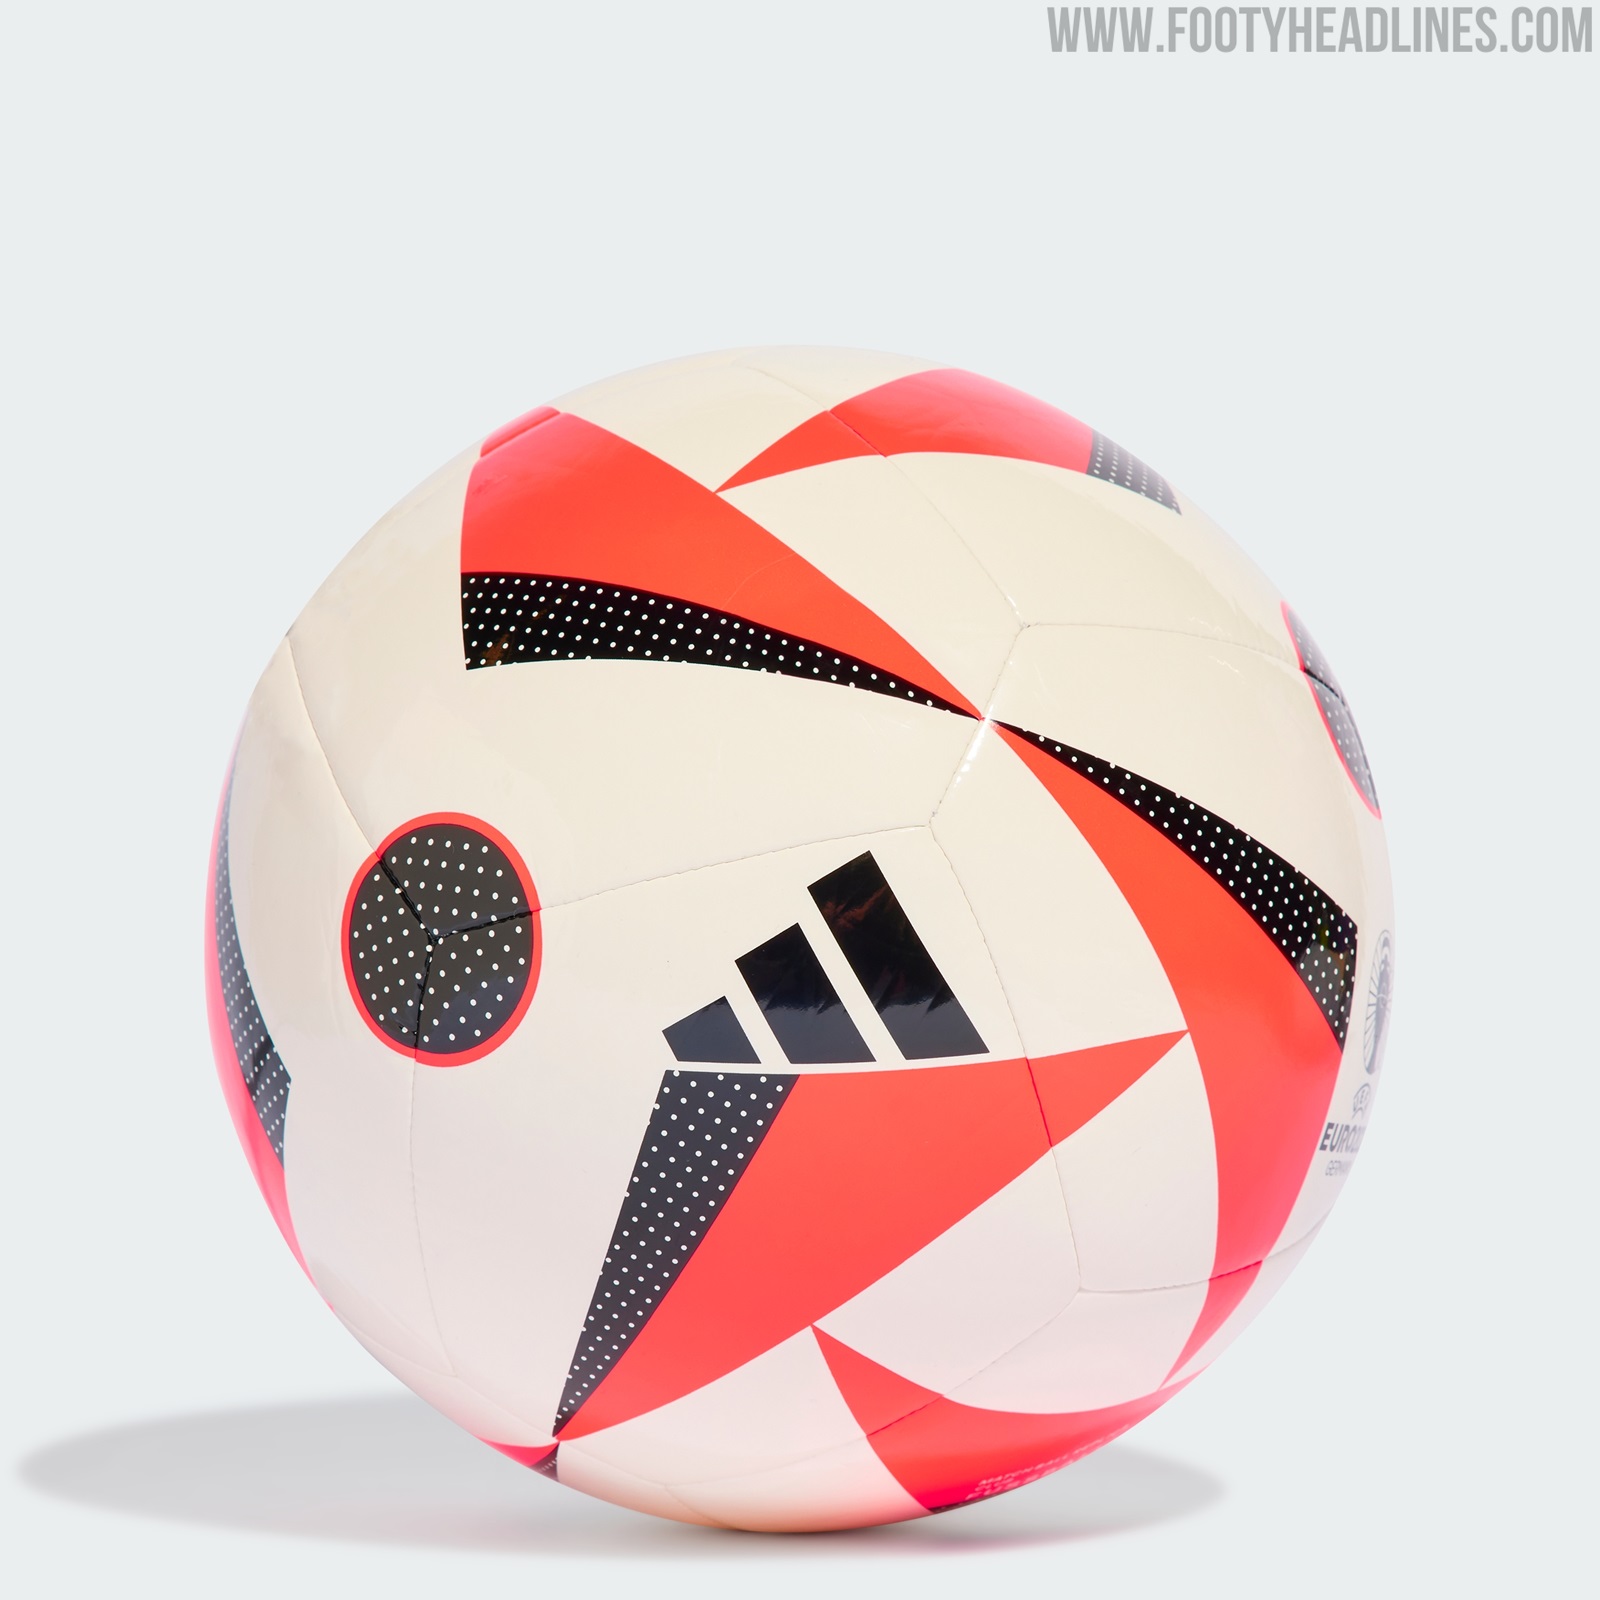 adidas Ballon FUSSBALLLIEBE Pro EURO 2024 Ballon de Match - Blanc